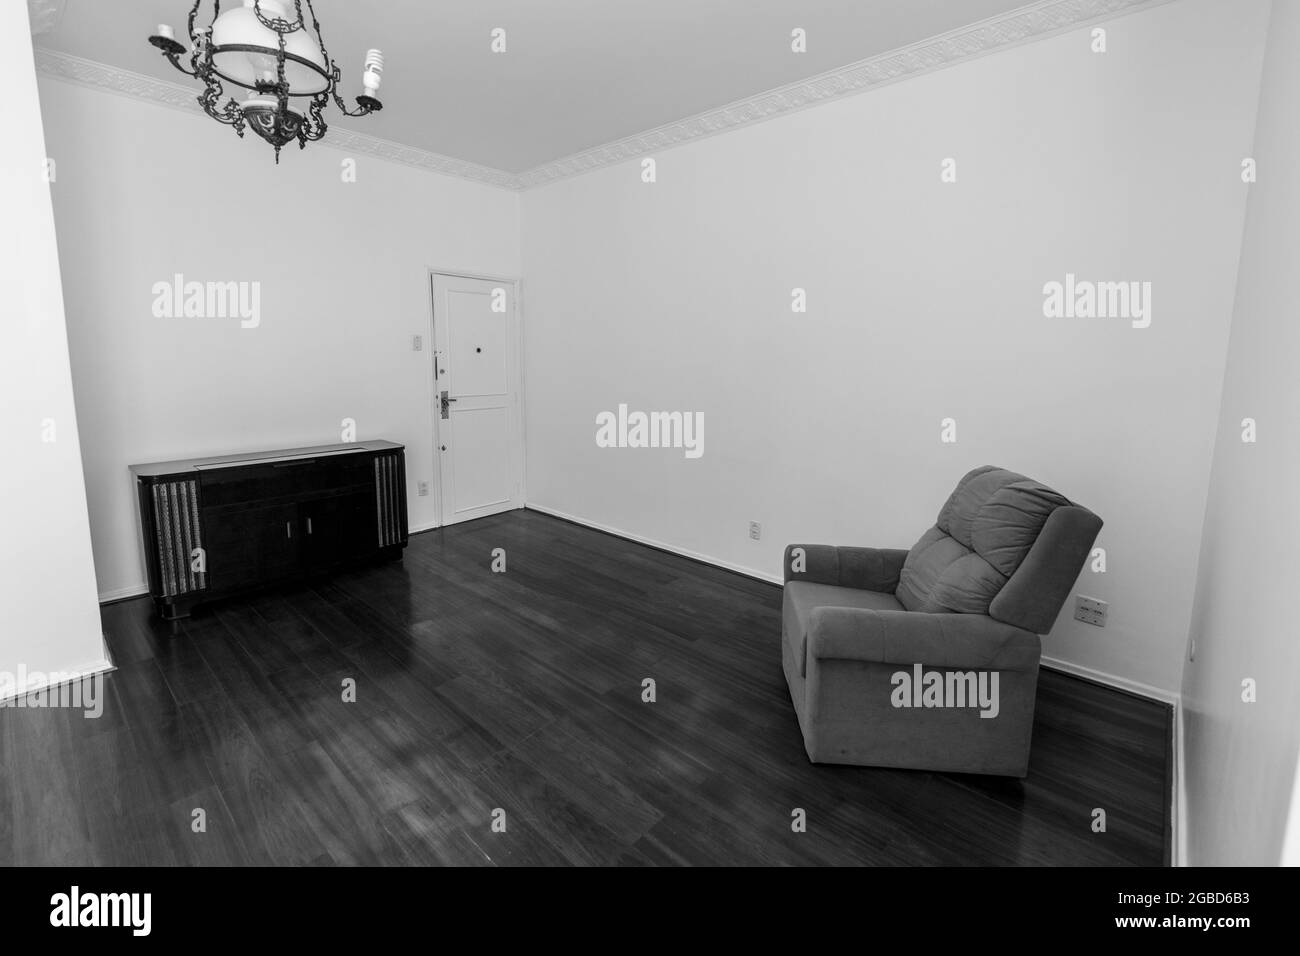 Photo en niveaux de gris du lustre, de la table et de la chaise dans une pièce Banque D'Images